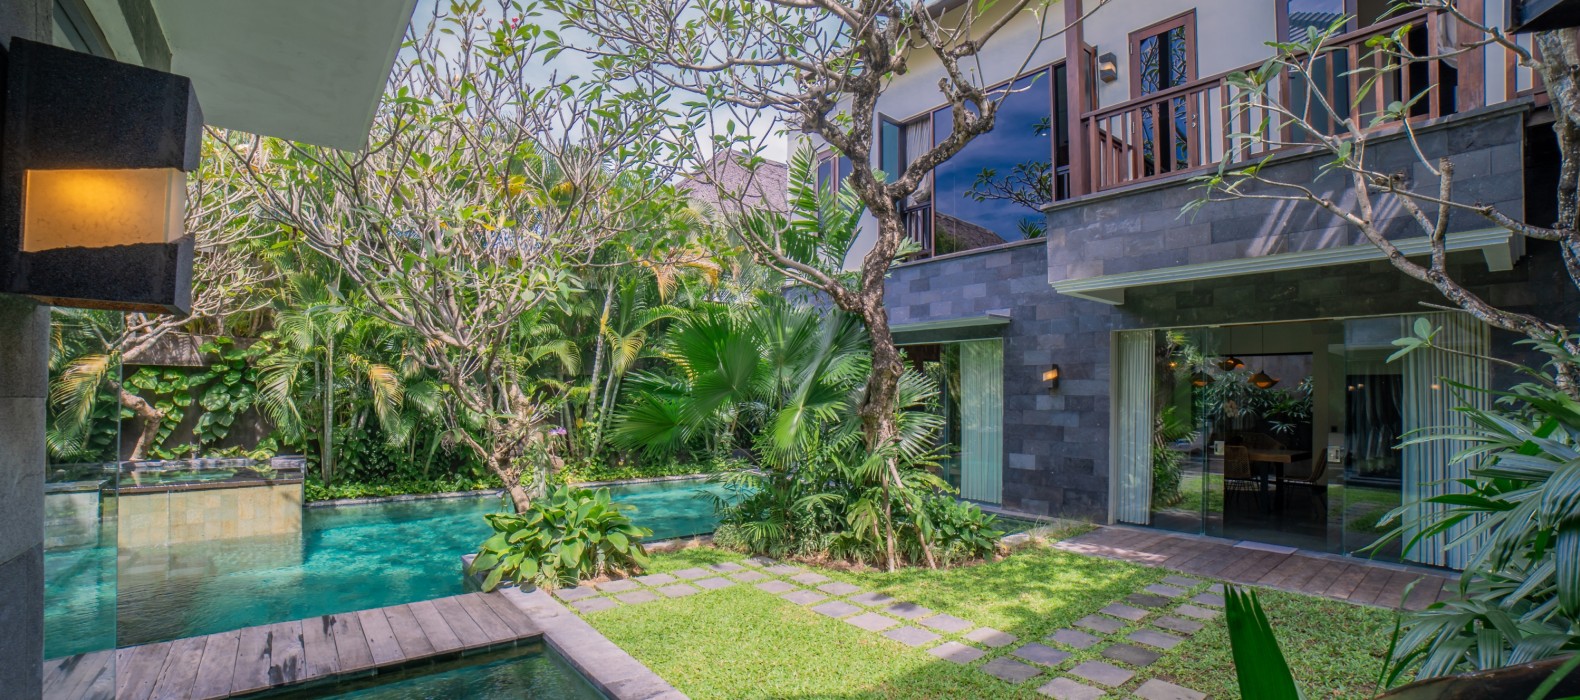 Exterior area of Villa Suvitha in Bali